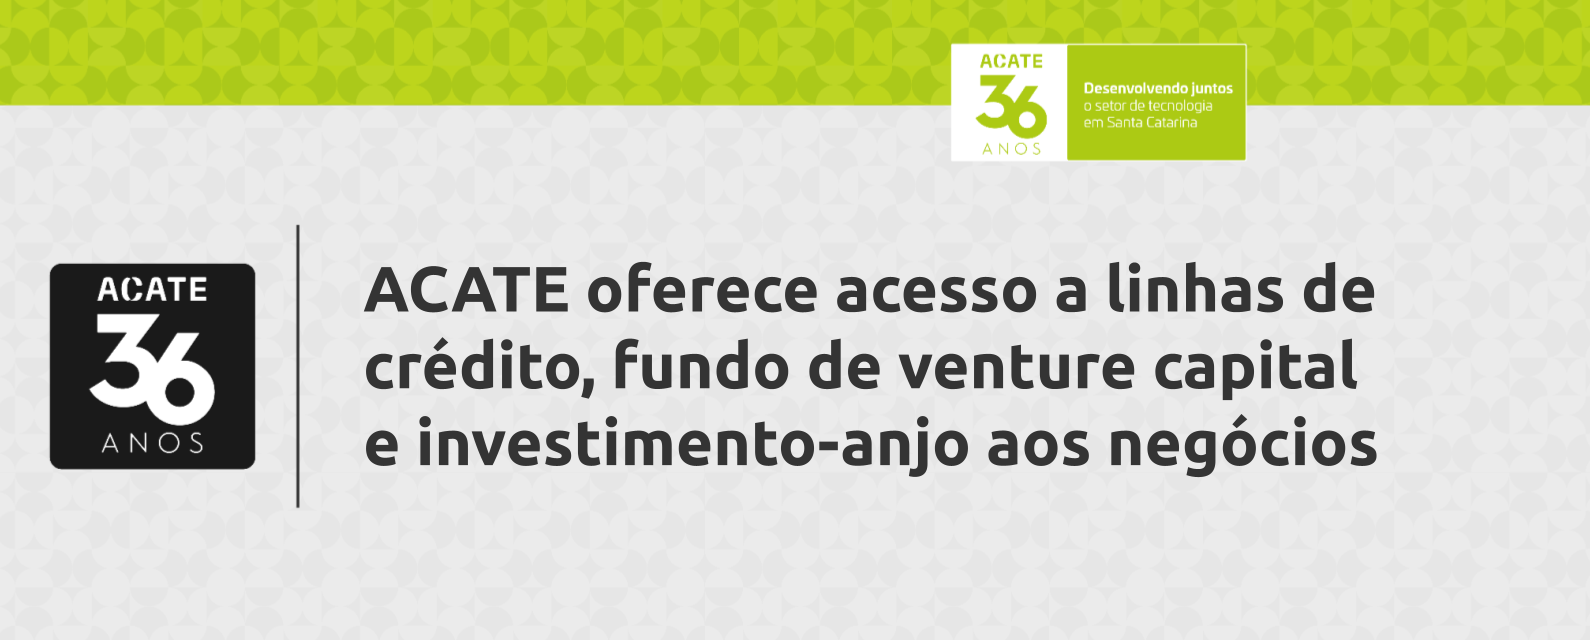 ACATE oferece acesso a linhas de crédito, fundo de venture capital e investimento-anjo às empresas